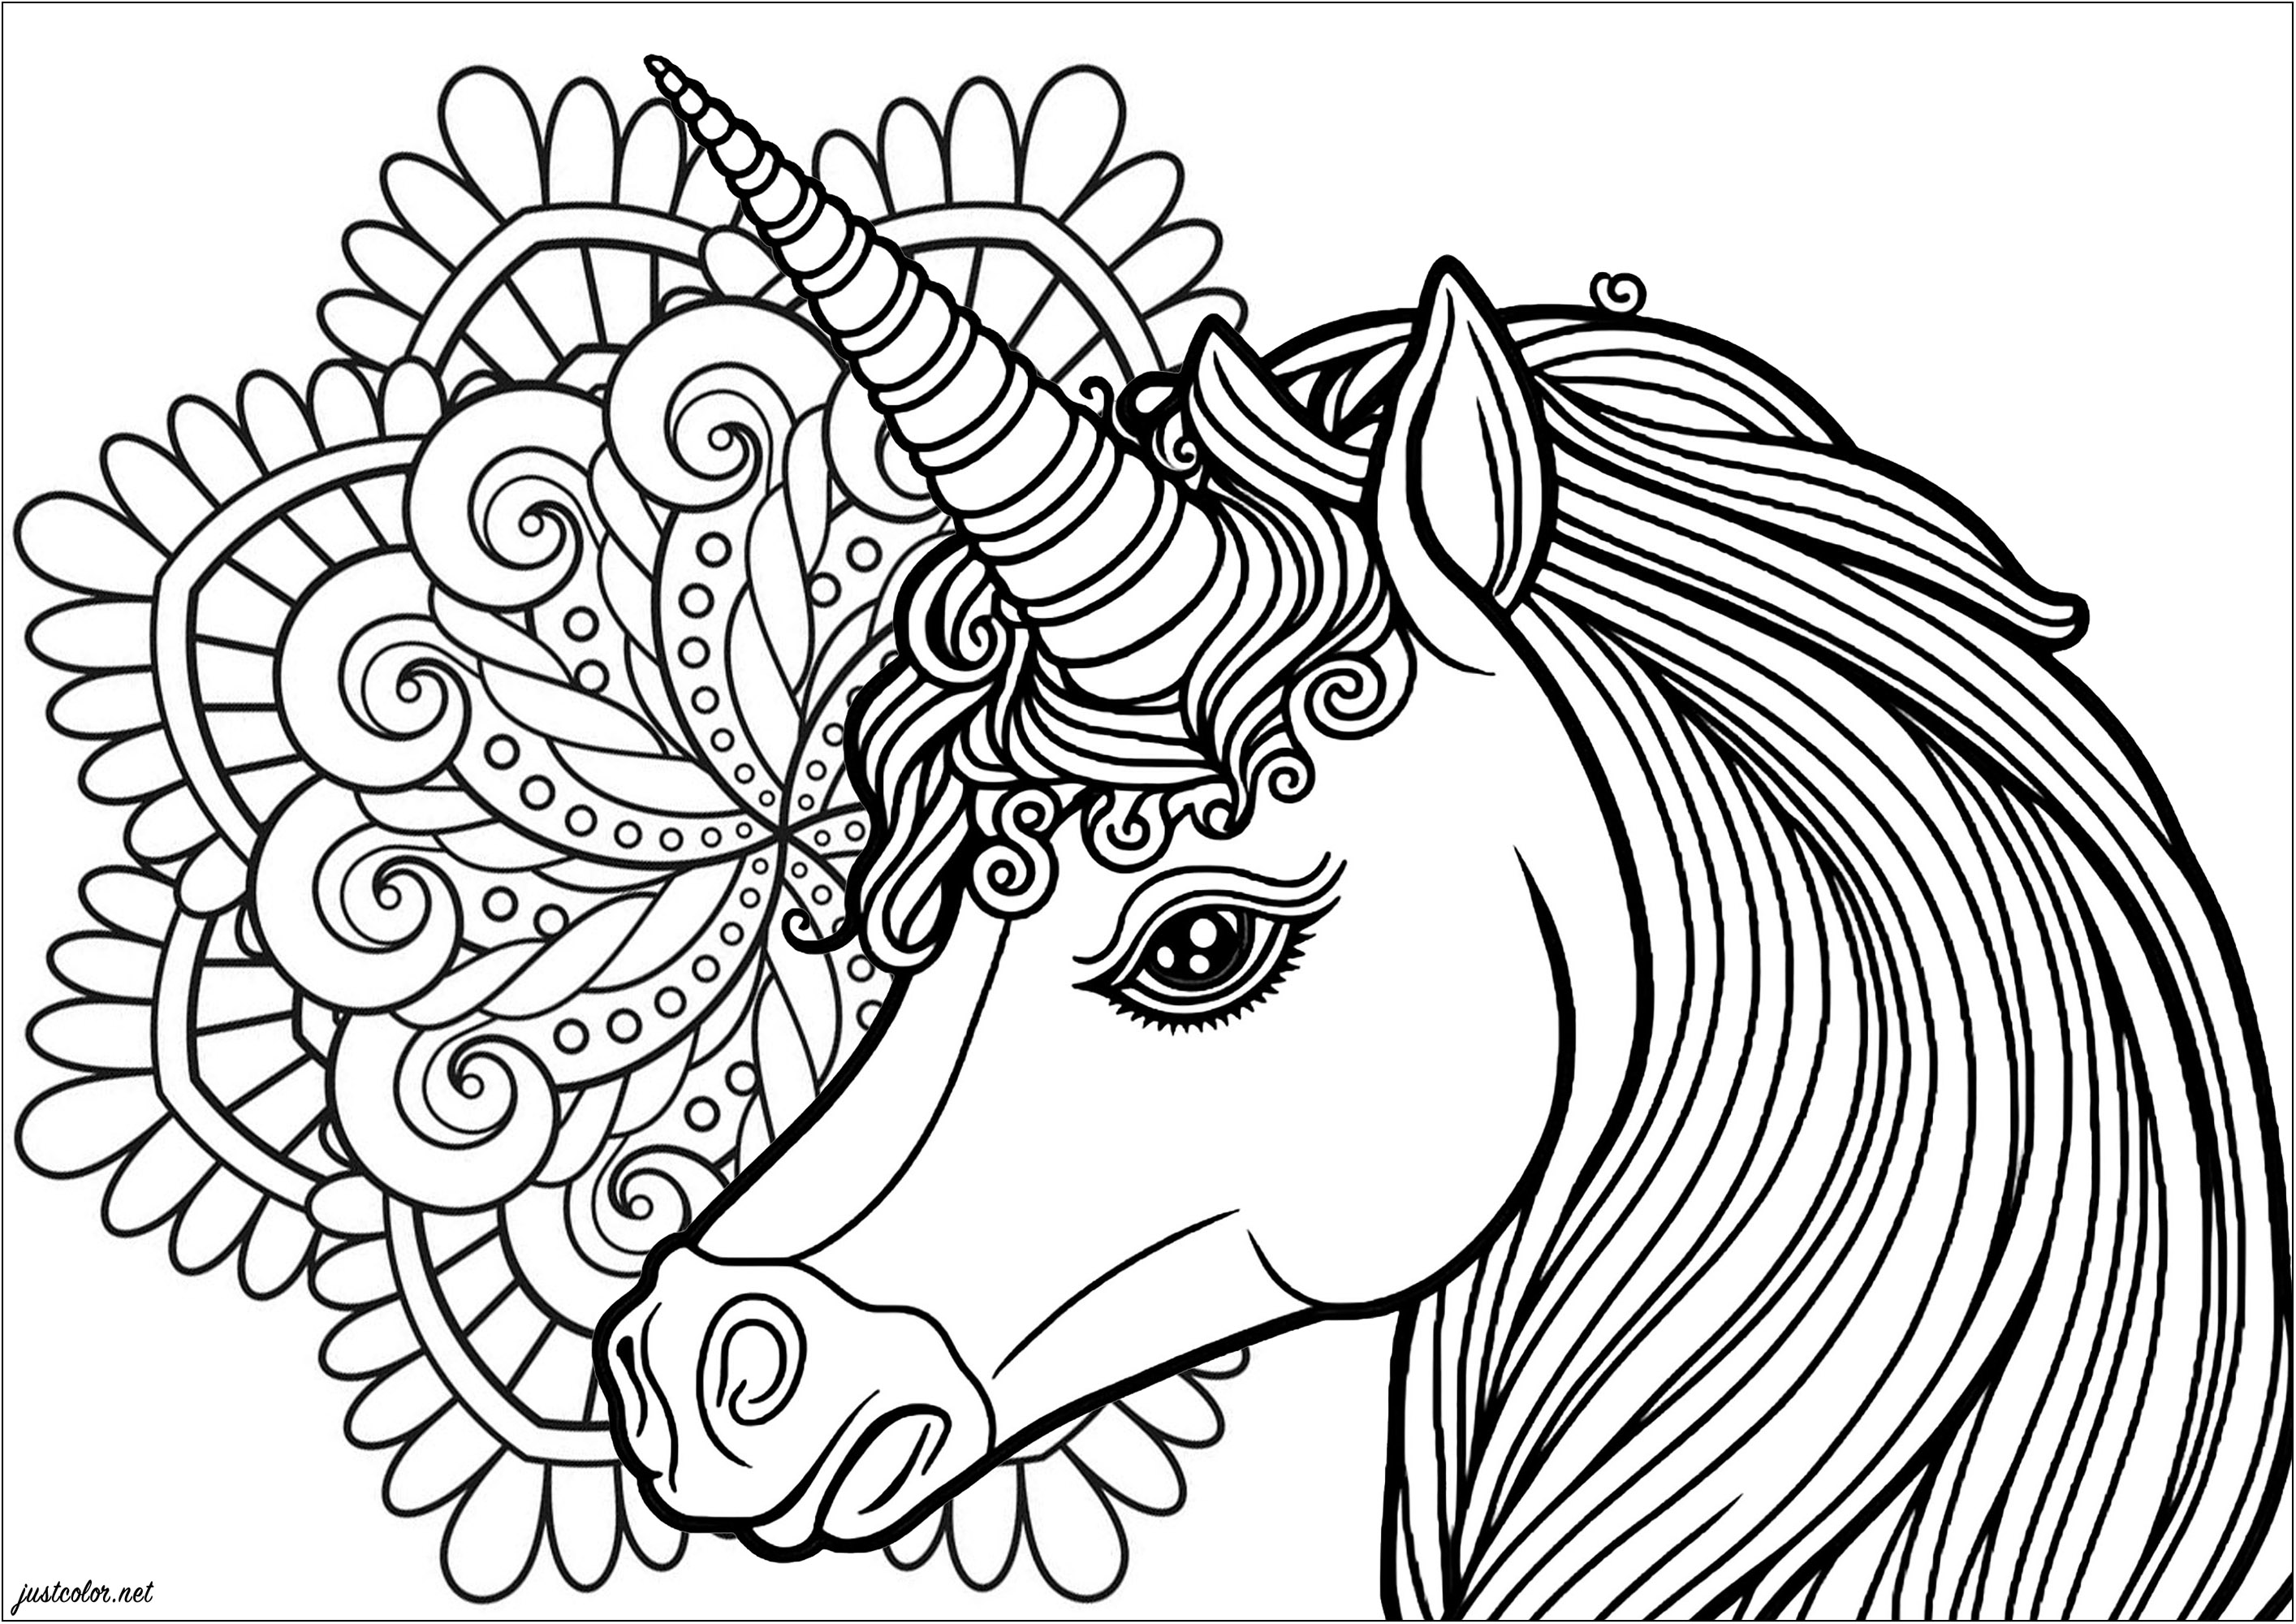 Profilo di unicorno con un bel mandala sullo sfondo. Trasformate ogni tratto del vostro pennarello in un raggio di magia e date libero sfogo alla vostra immaginazione, colorando questo grazioso unicorno e questo mandala ispiratore.